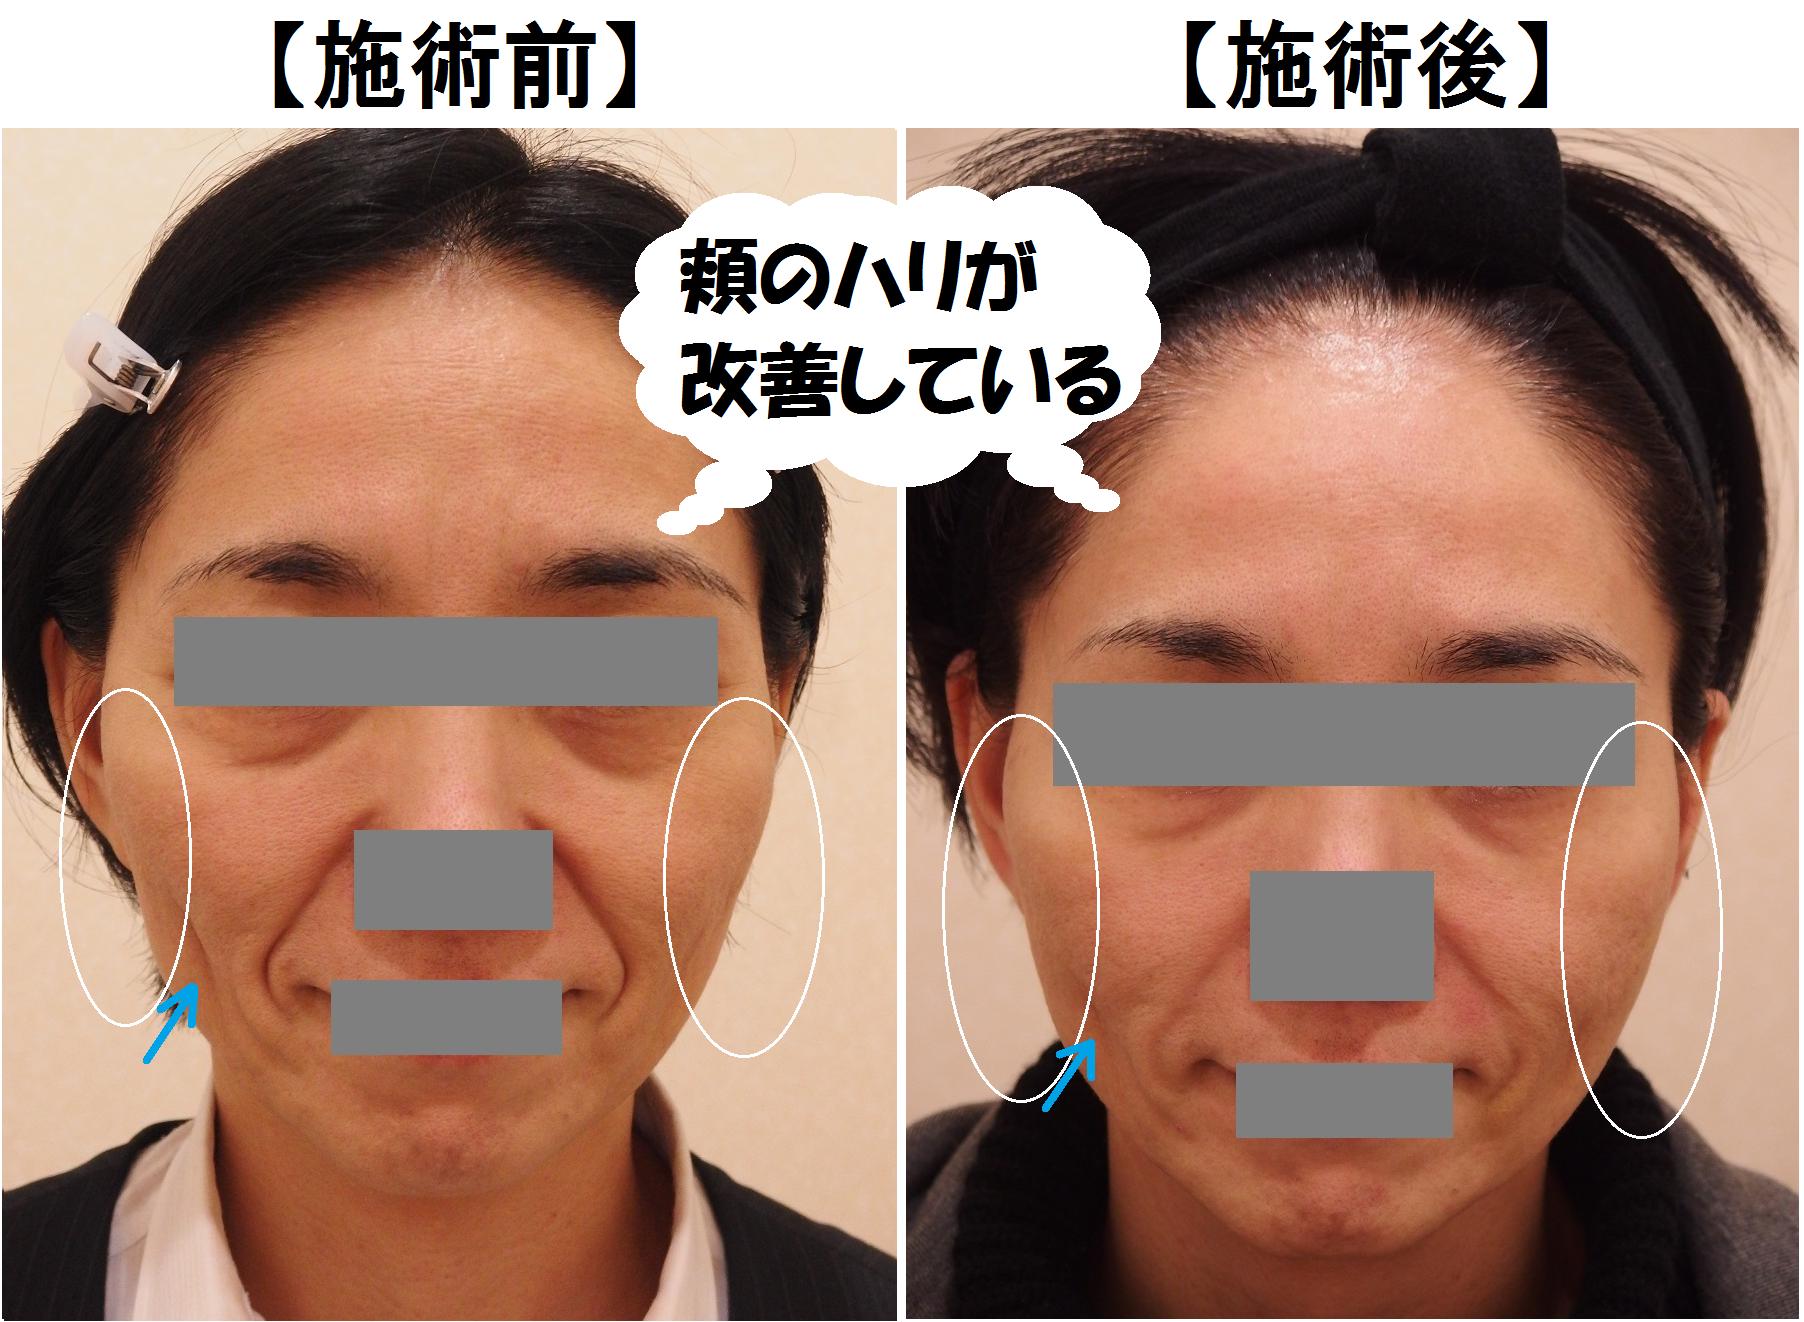 47歳の患者様 頬のこけ シワ改善による若返り カルミア美肌クリニック 院長の症例ブログ